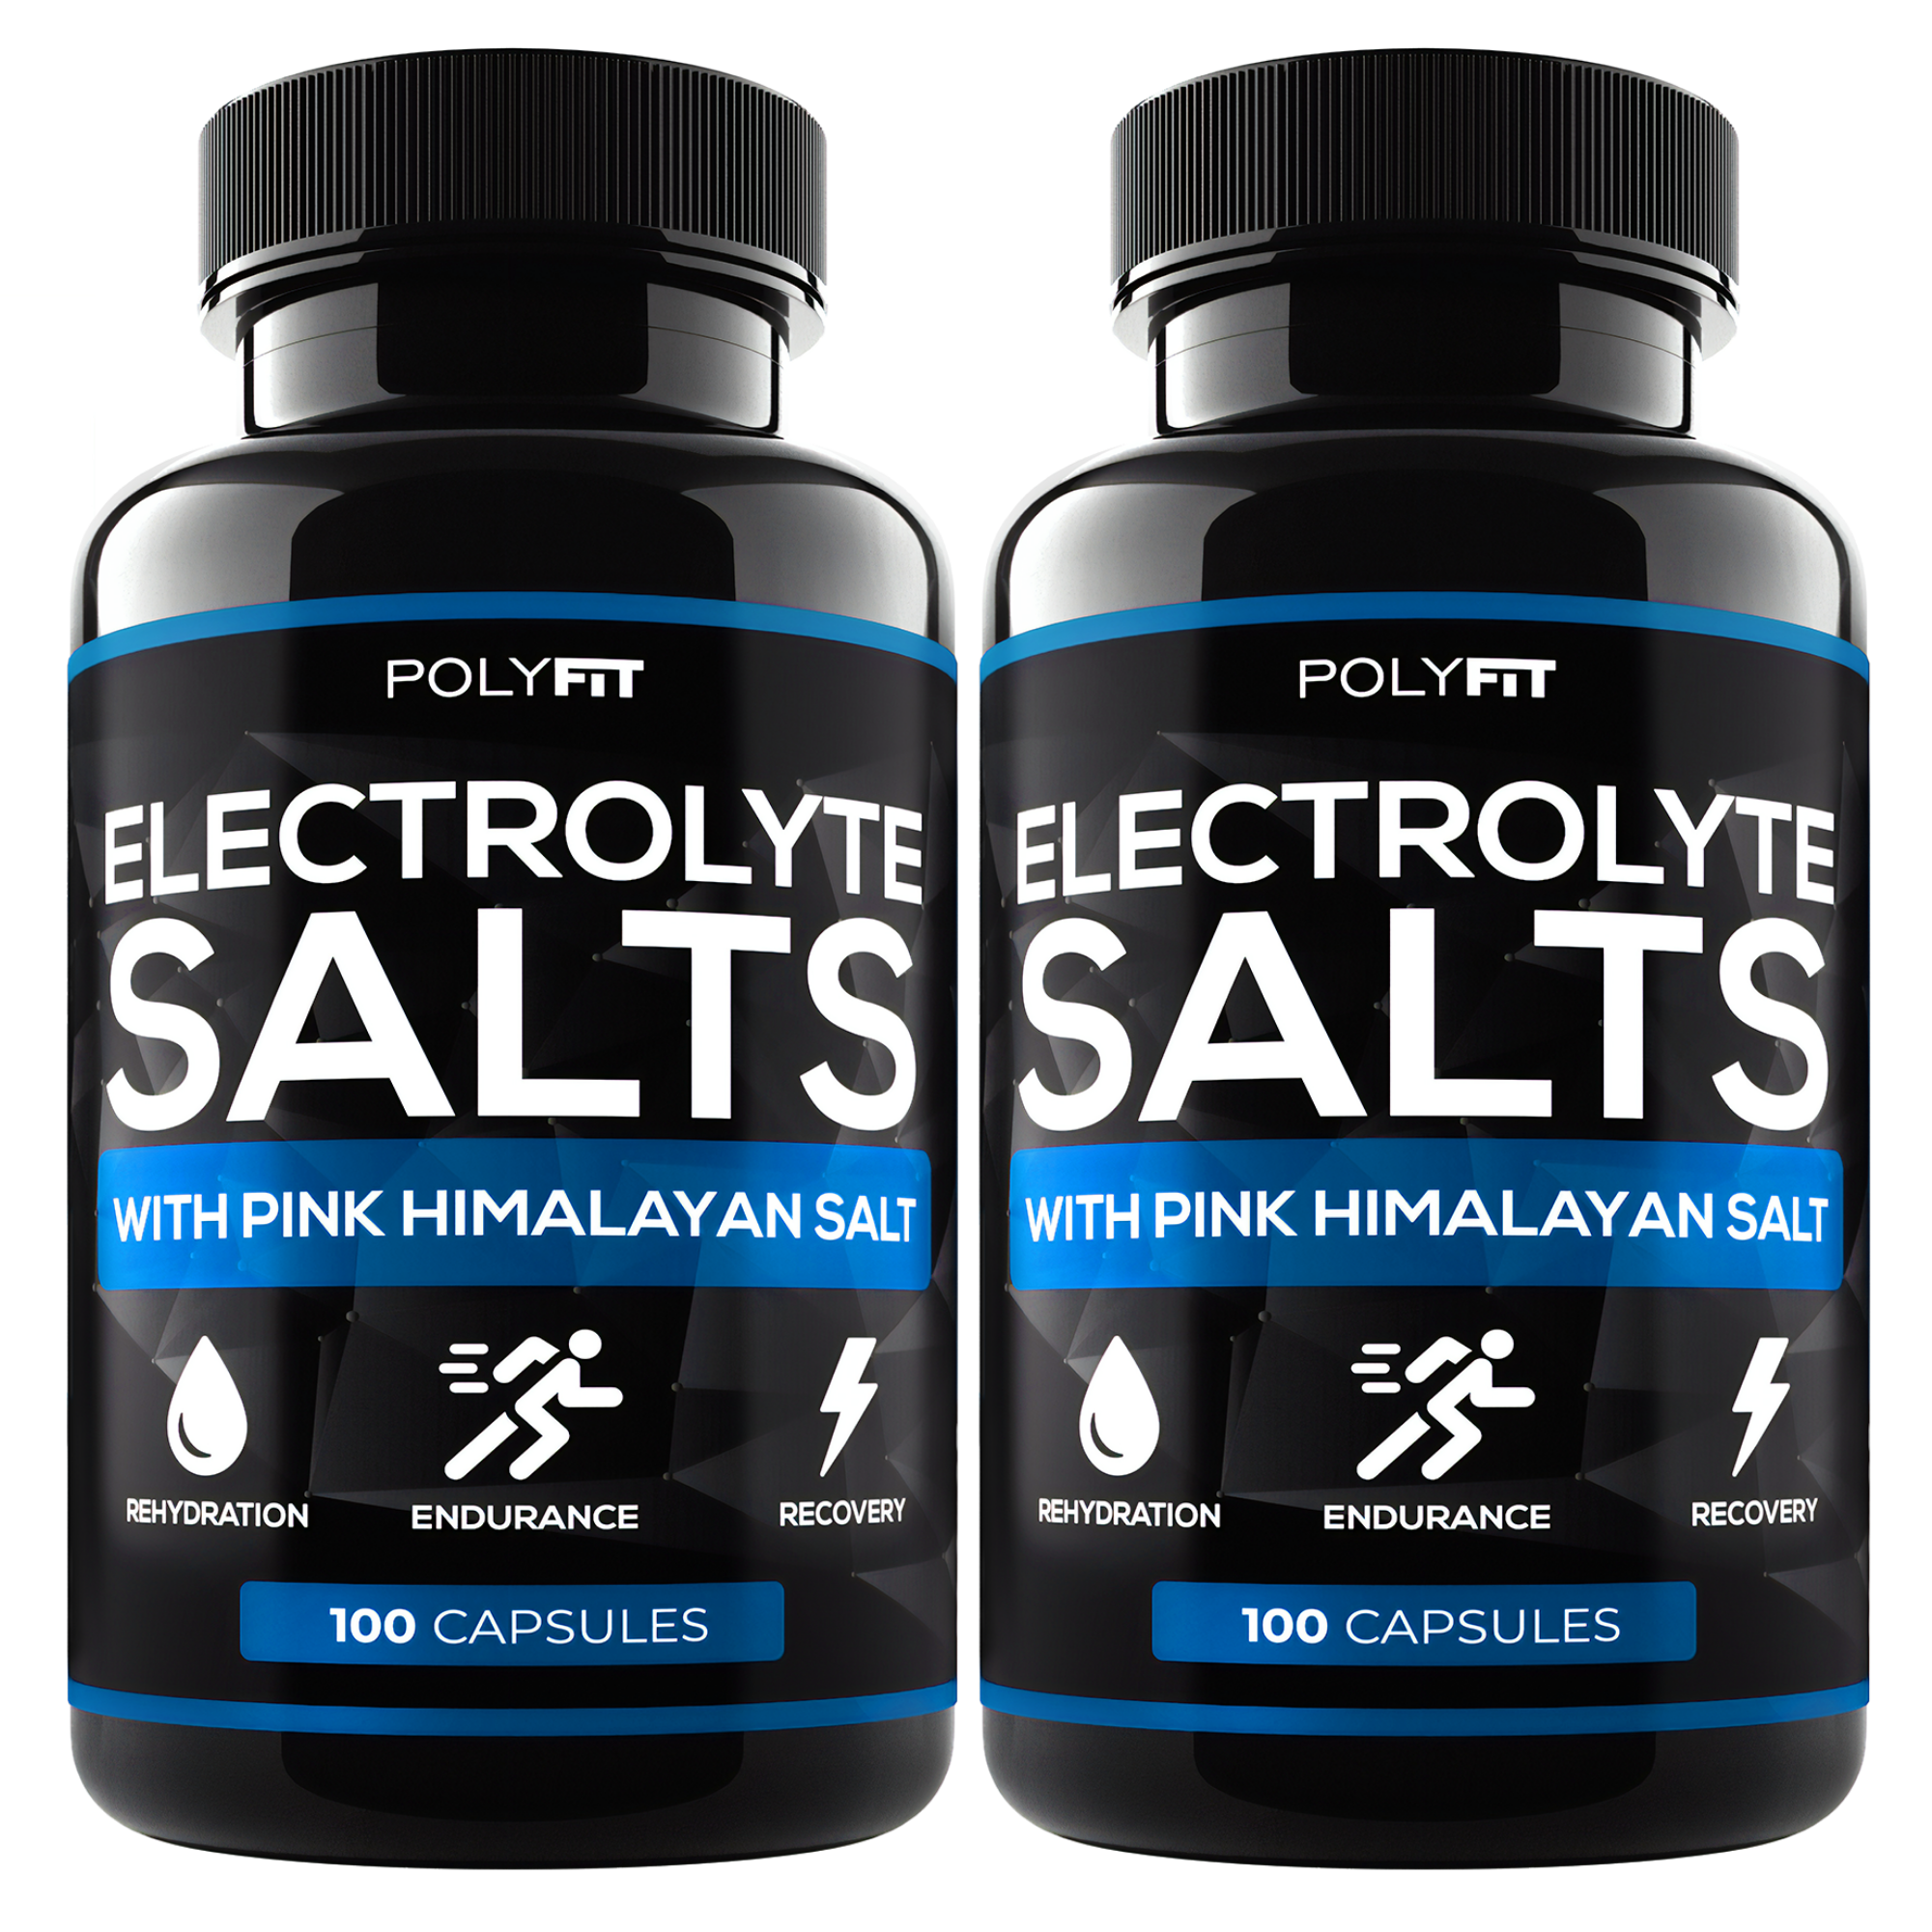 grill otte sammentrækning 2 Pack | 200 Salt Pills) Electrolyte Salt Tablets – Polyfit